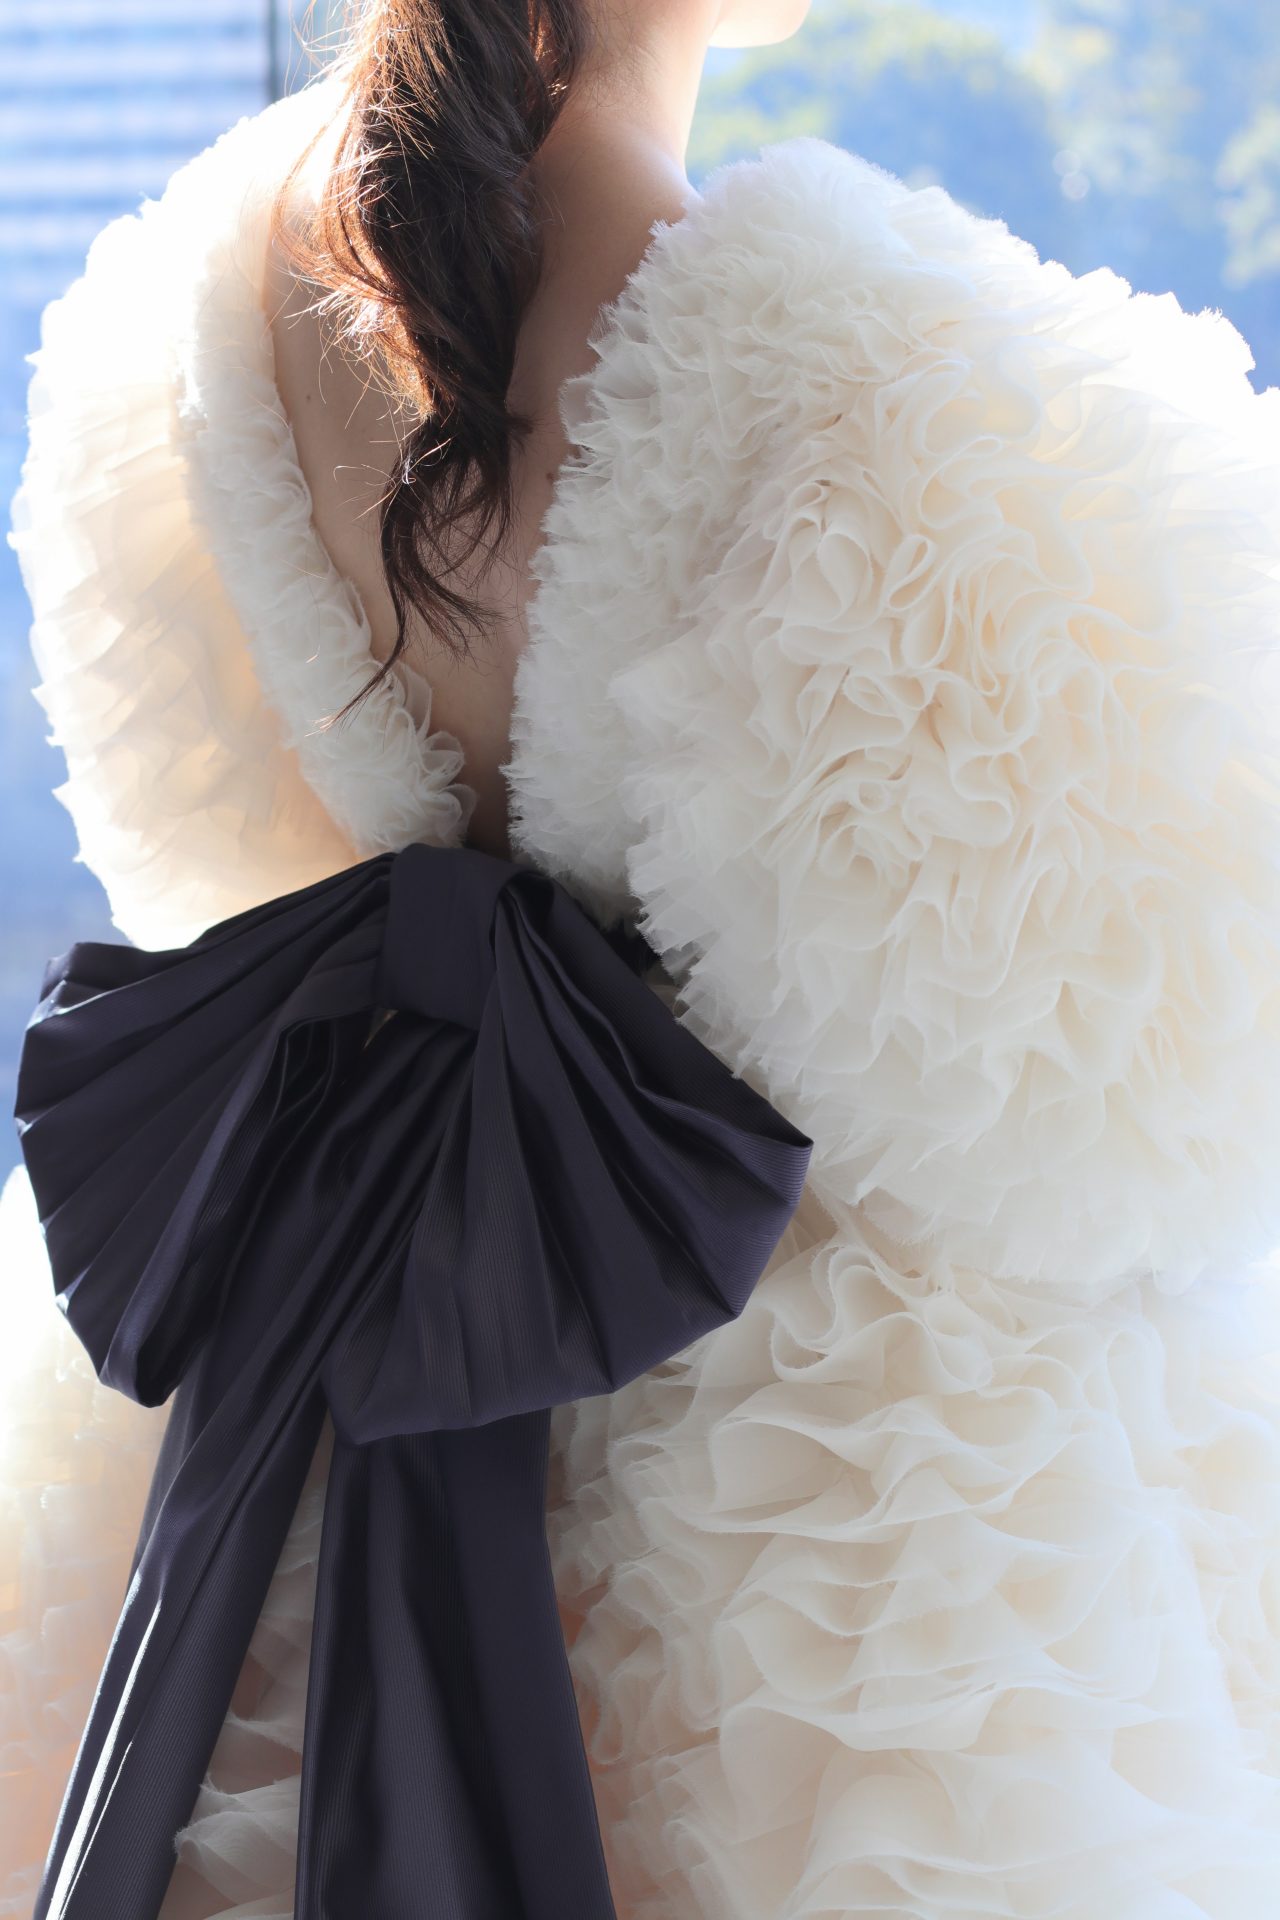 花嫁の美しいバックスタイルを際立たせるVバックのウェディングドレスは、幾重にも重なるふんわりとした繊細なオーガンジー素材のフリルと、ダークパープルの大振りなリボンが女性らしい可愛らしさとエレガントさを引き立てるデザインです